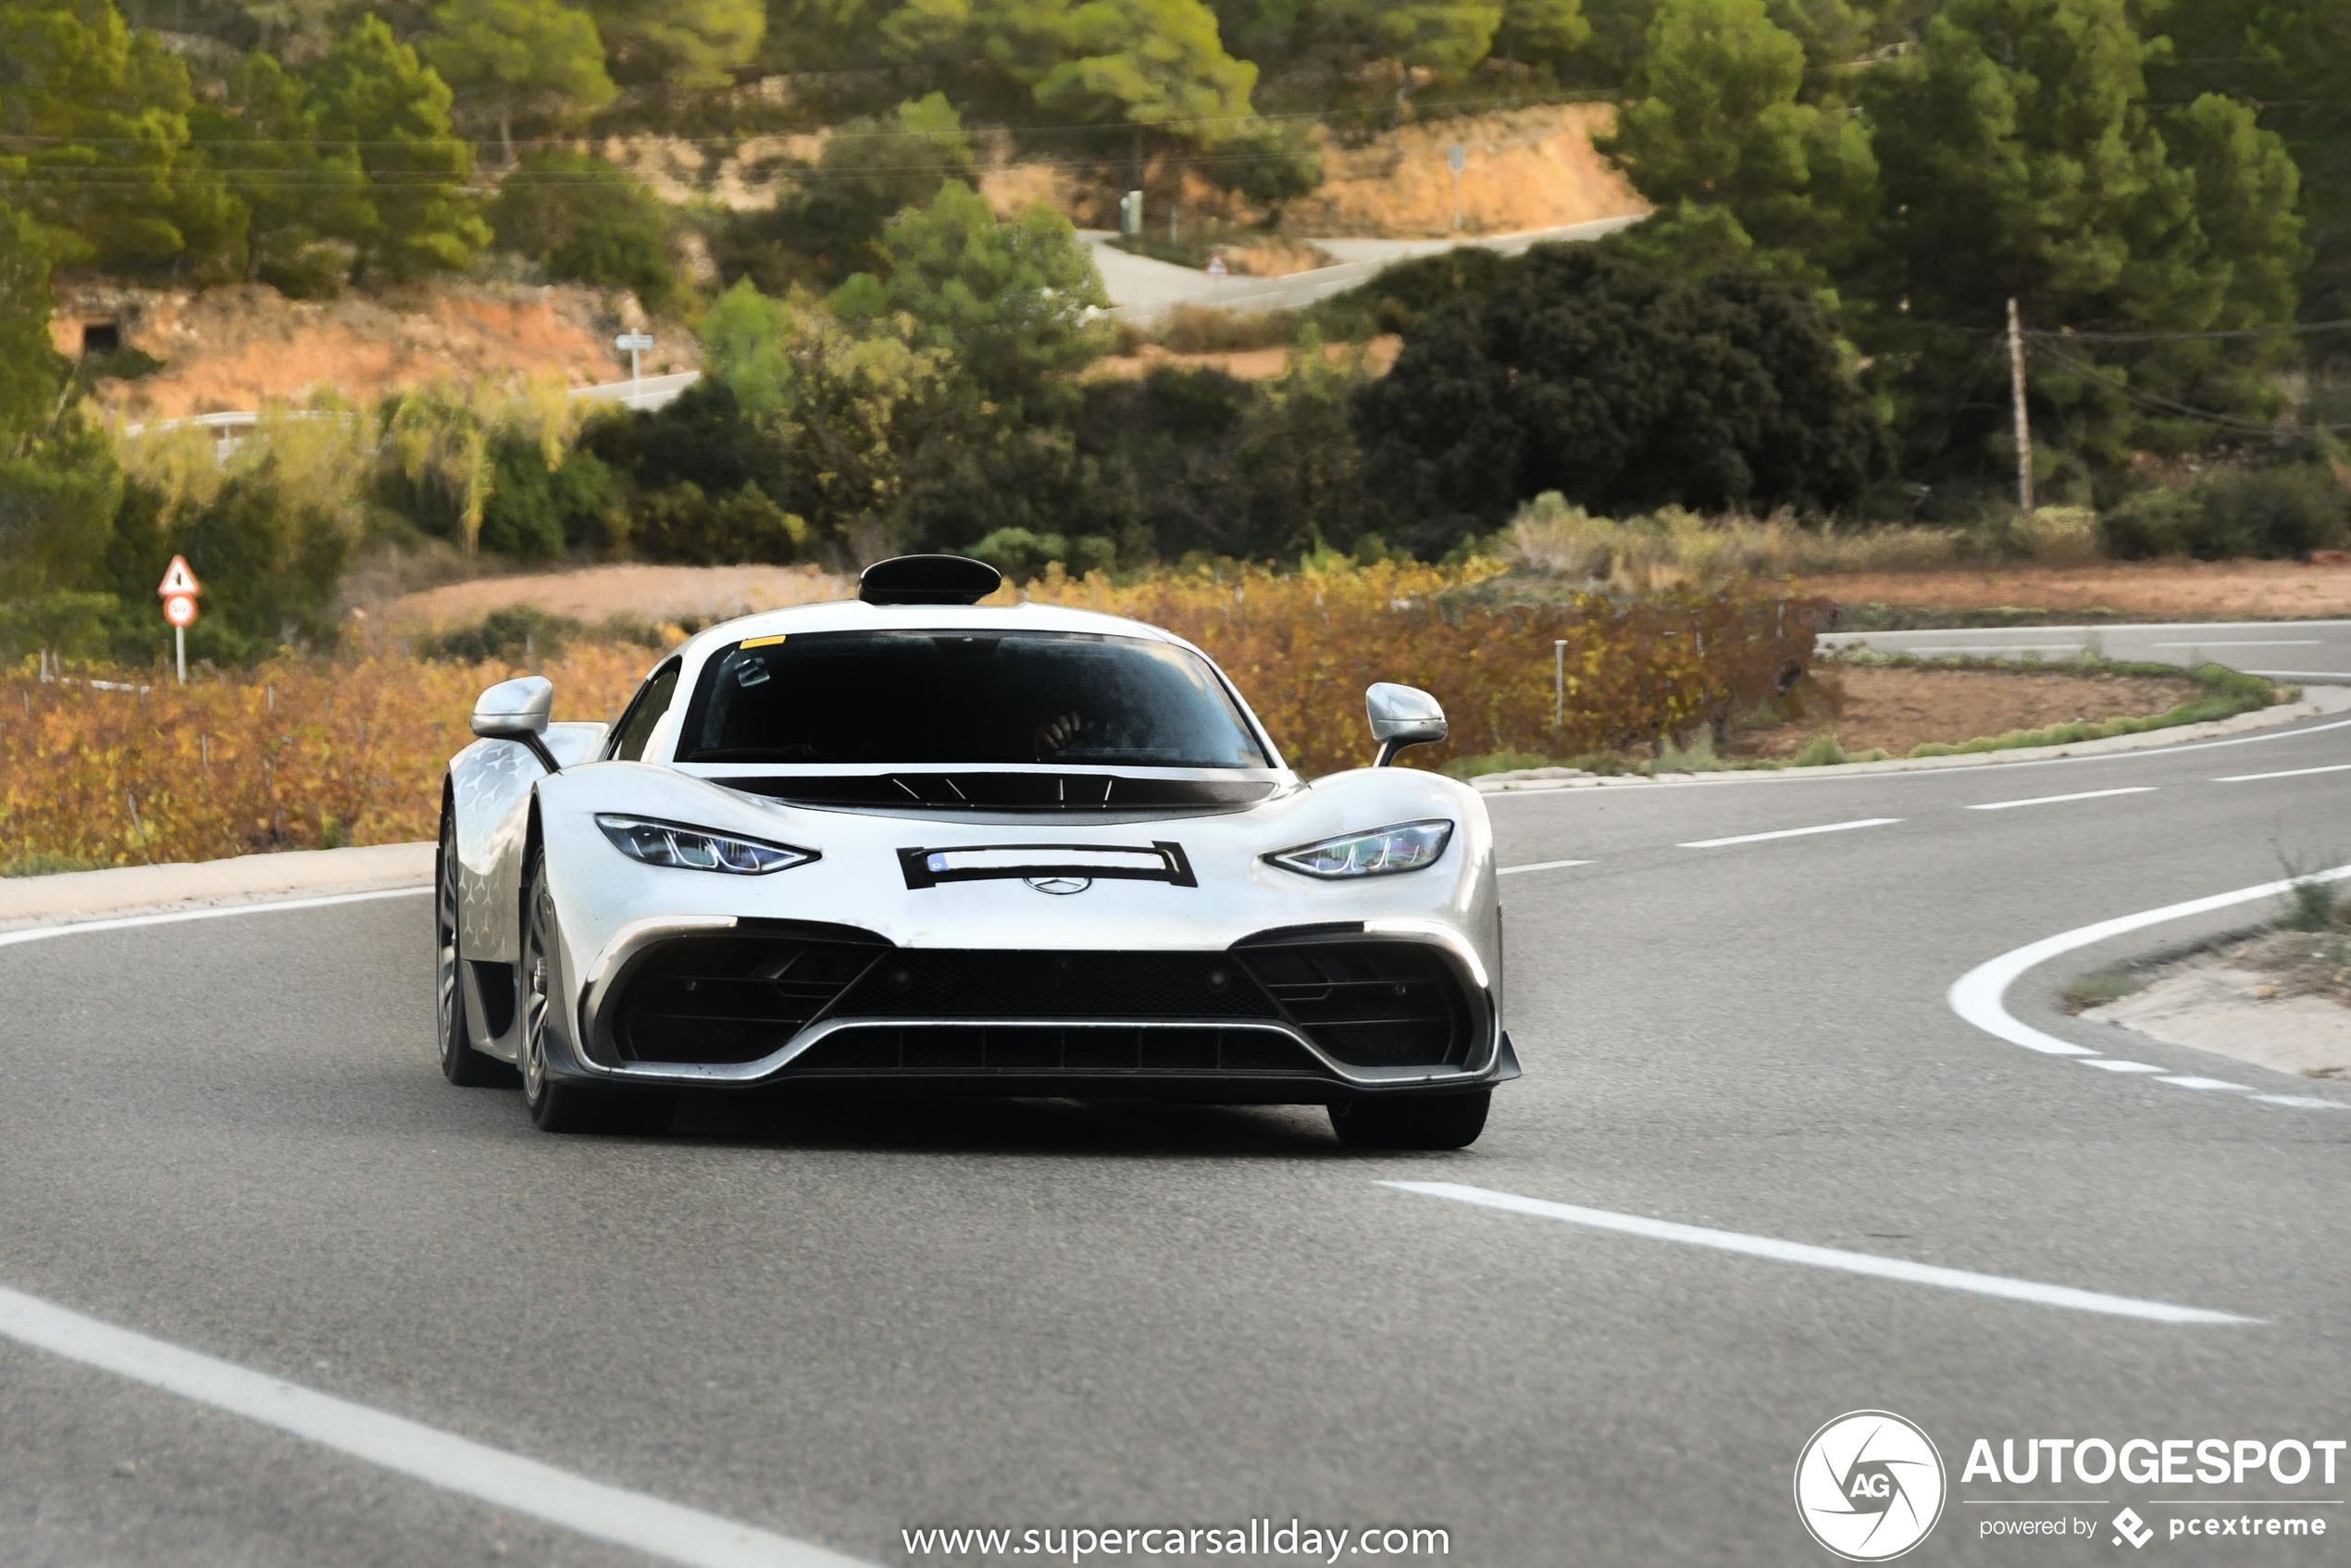 Hier is eindelijk de Mercedes-AMG Project One